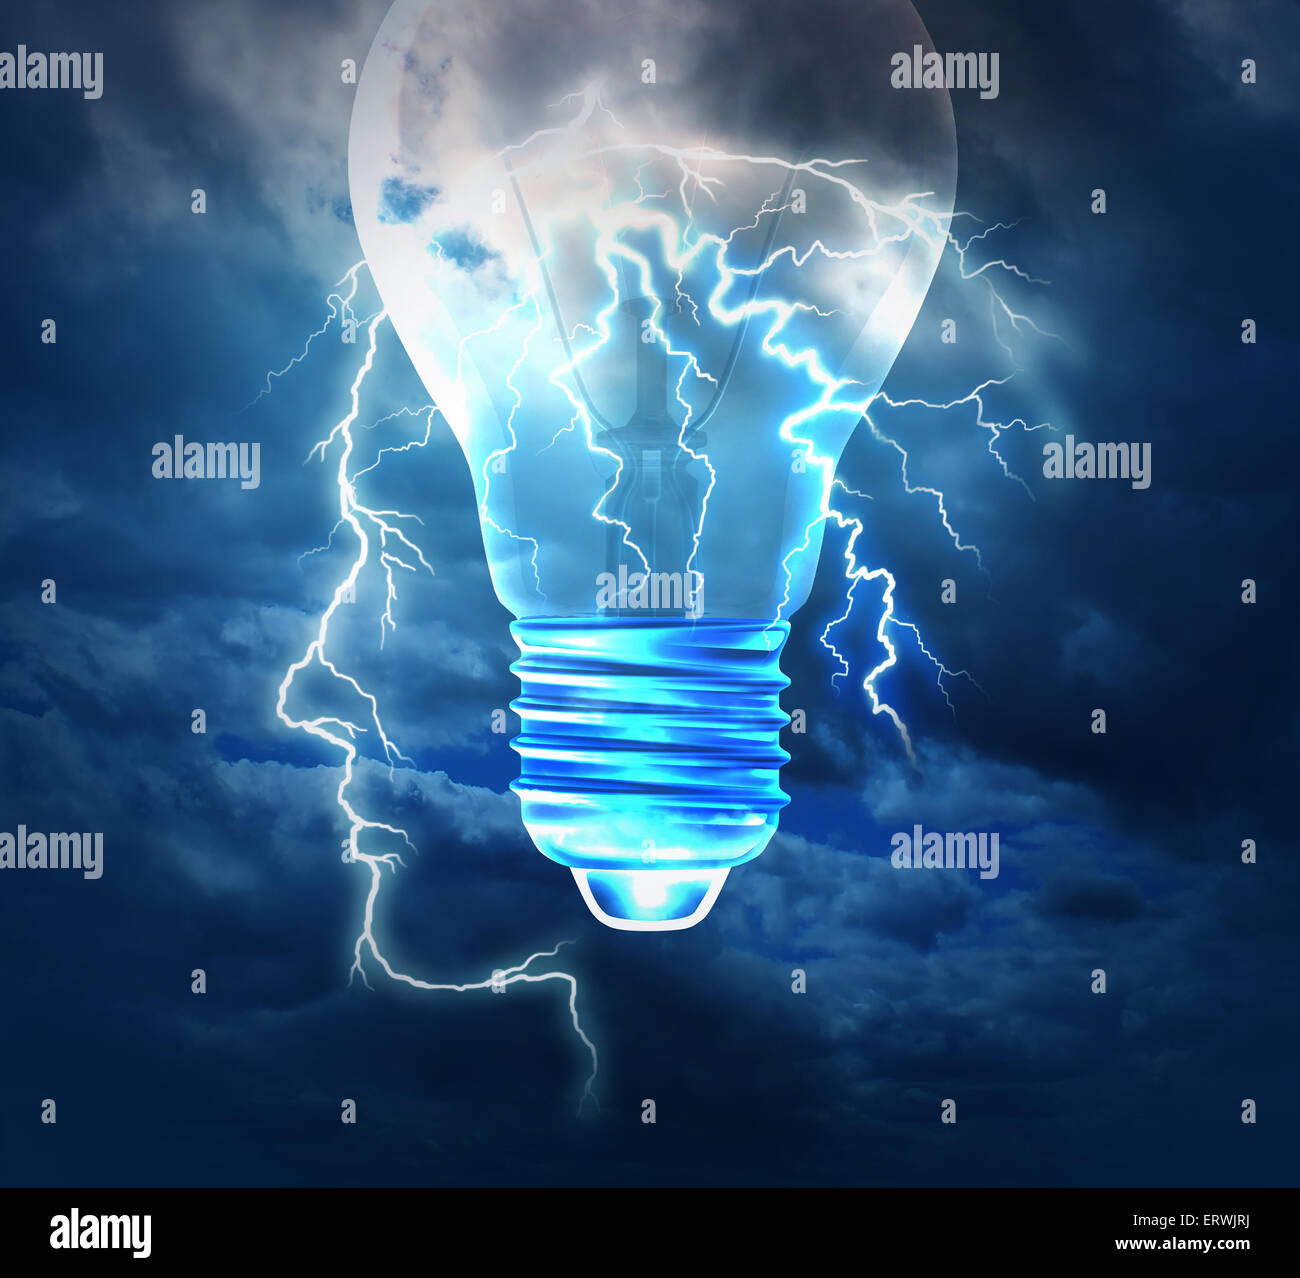 Kreative Idee Konzept oder Brainstorming-Symbol als ein Blitz vom Himmel, die Form eines menschlichen Kopfes mit einer Glühbirne-Bild als Metapher zu konzipieren und konzipieren Lösungen mit neuen hellen Innovationsdenken Brainstorming. Stockfoto